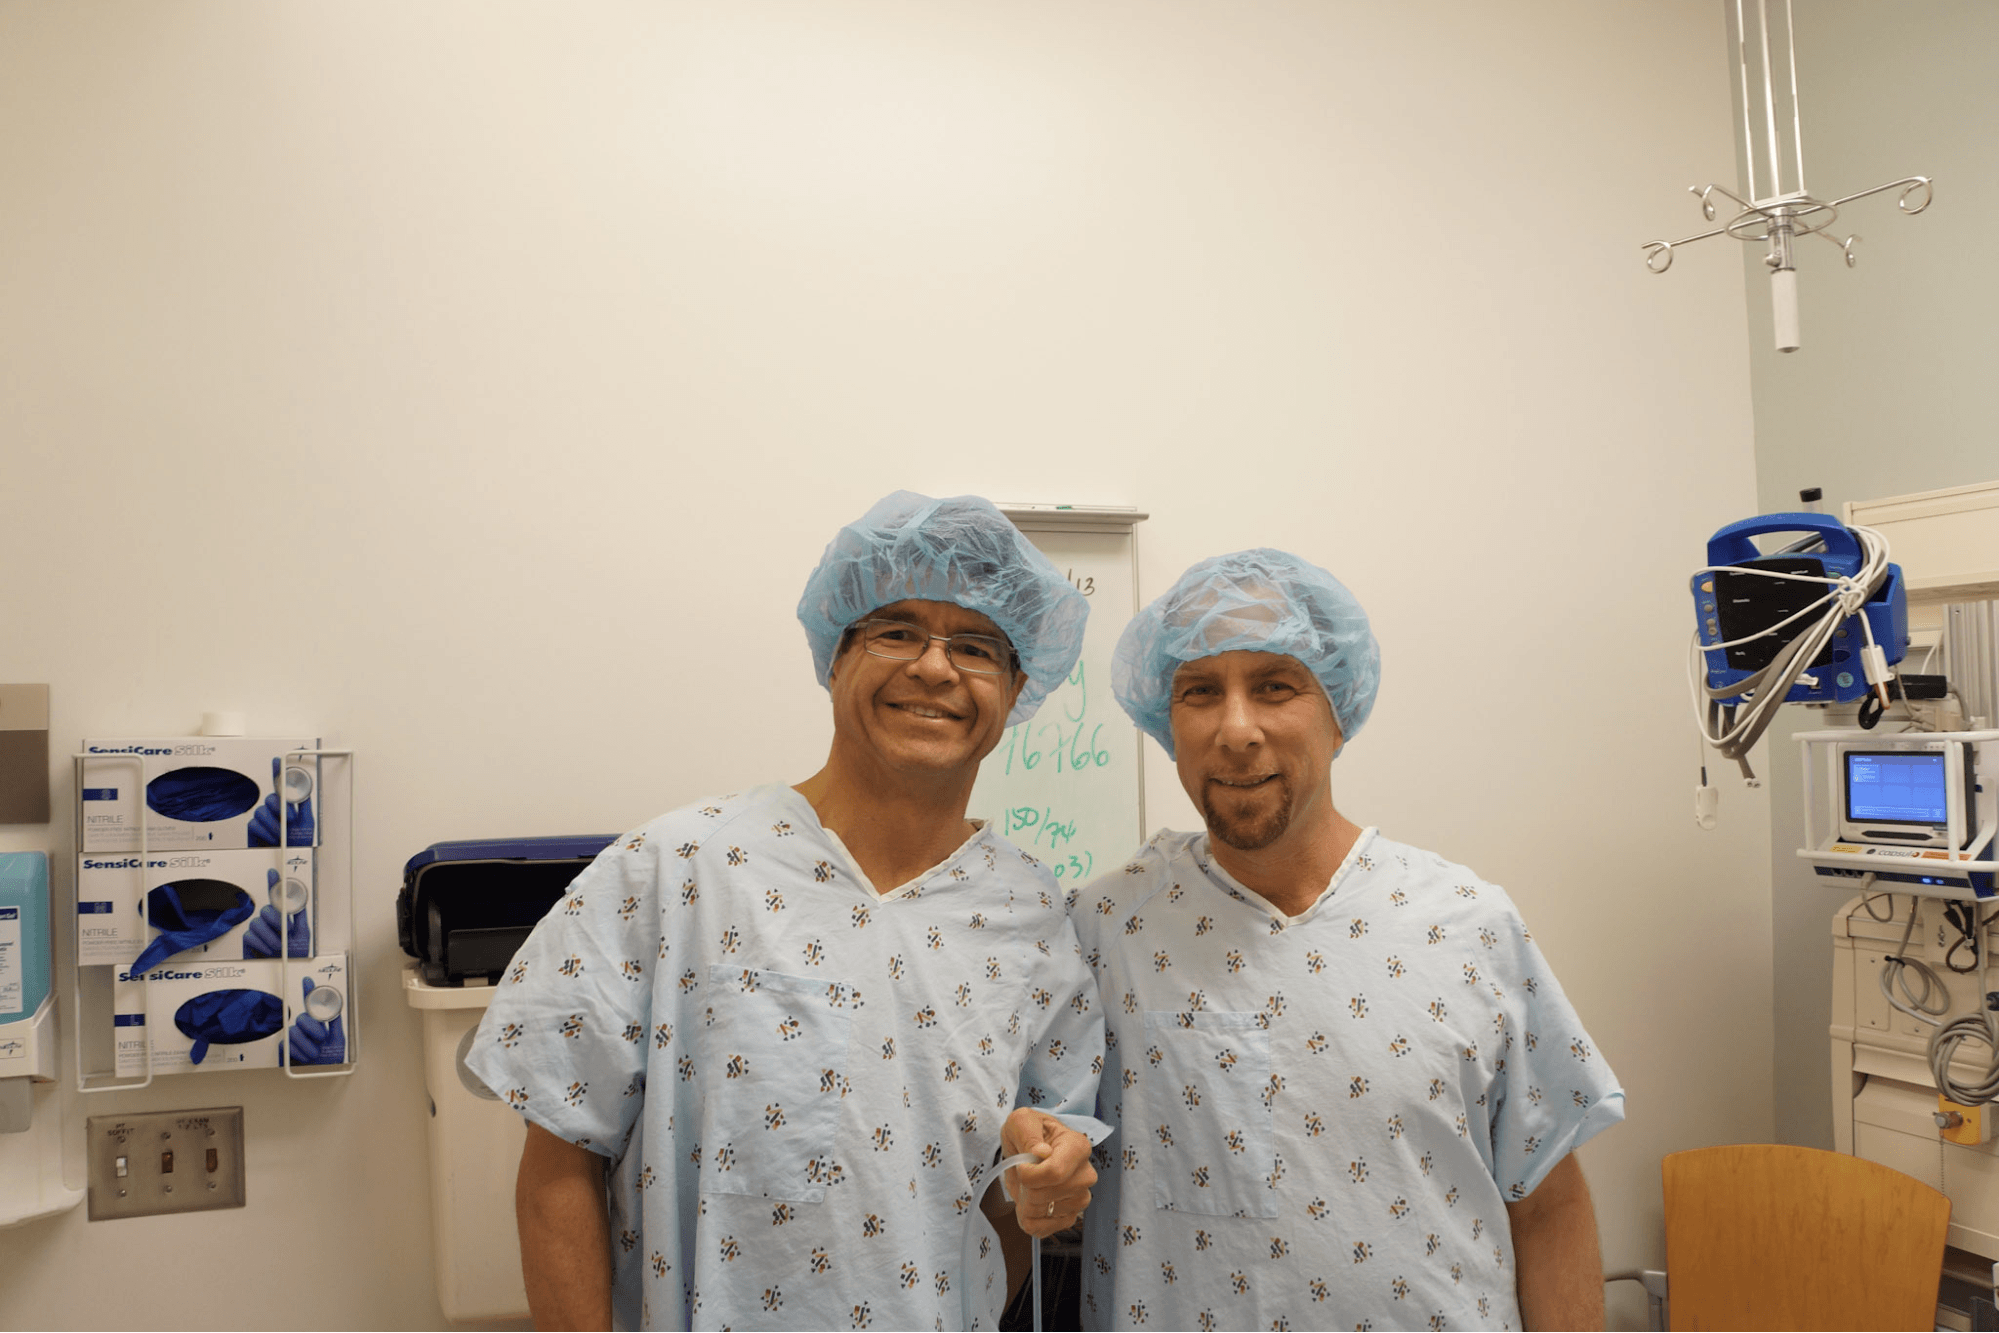 Джо (слева) и Марк (справа) в больничных халатах после процедуры.